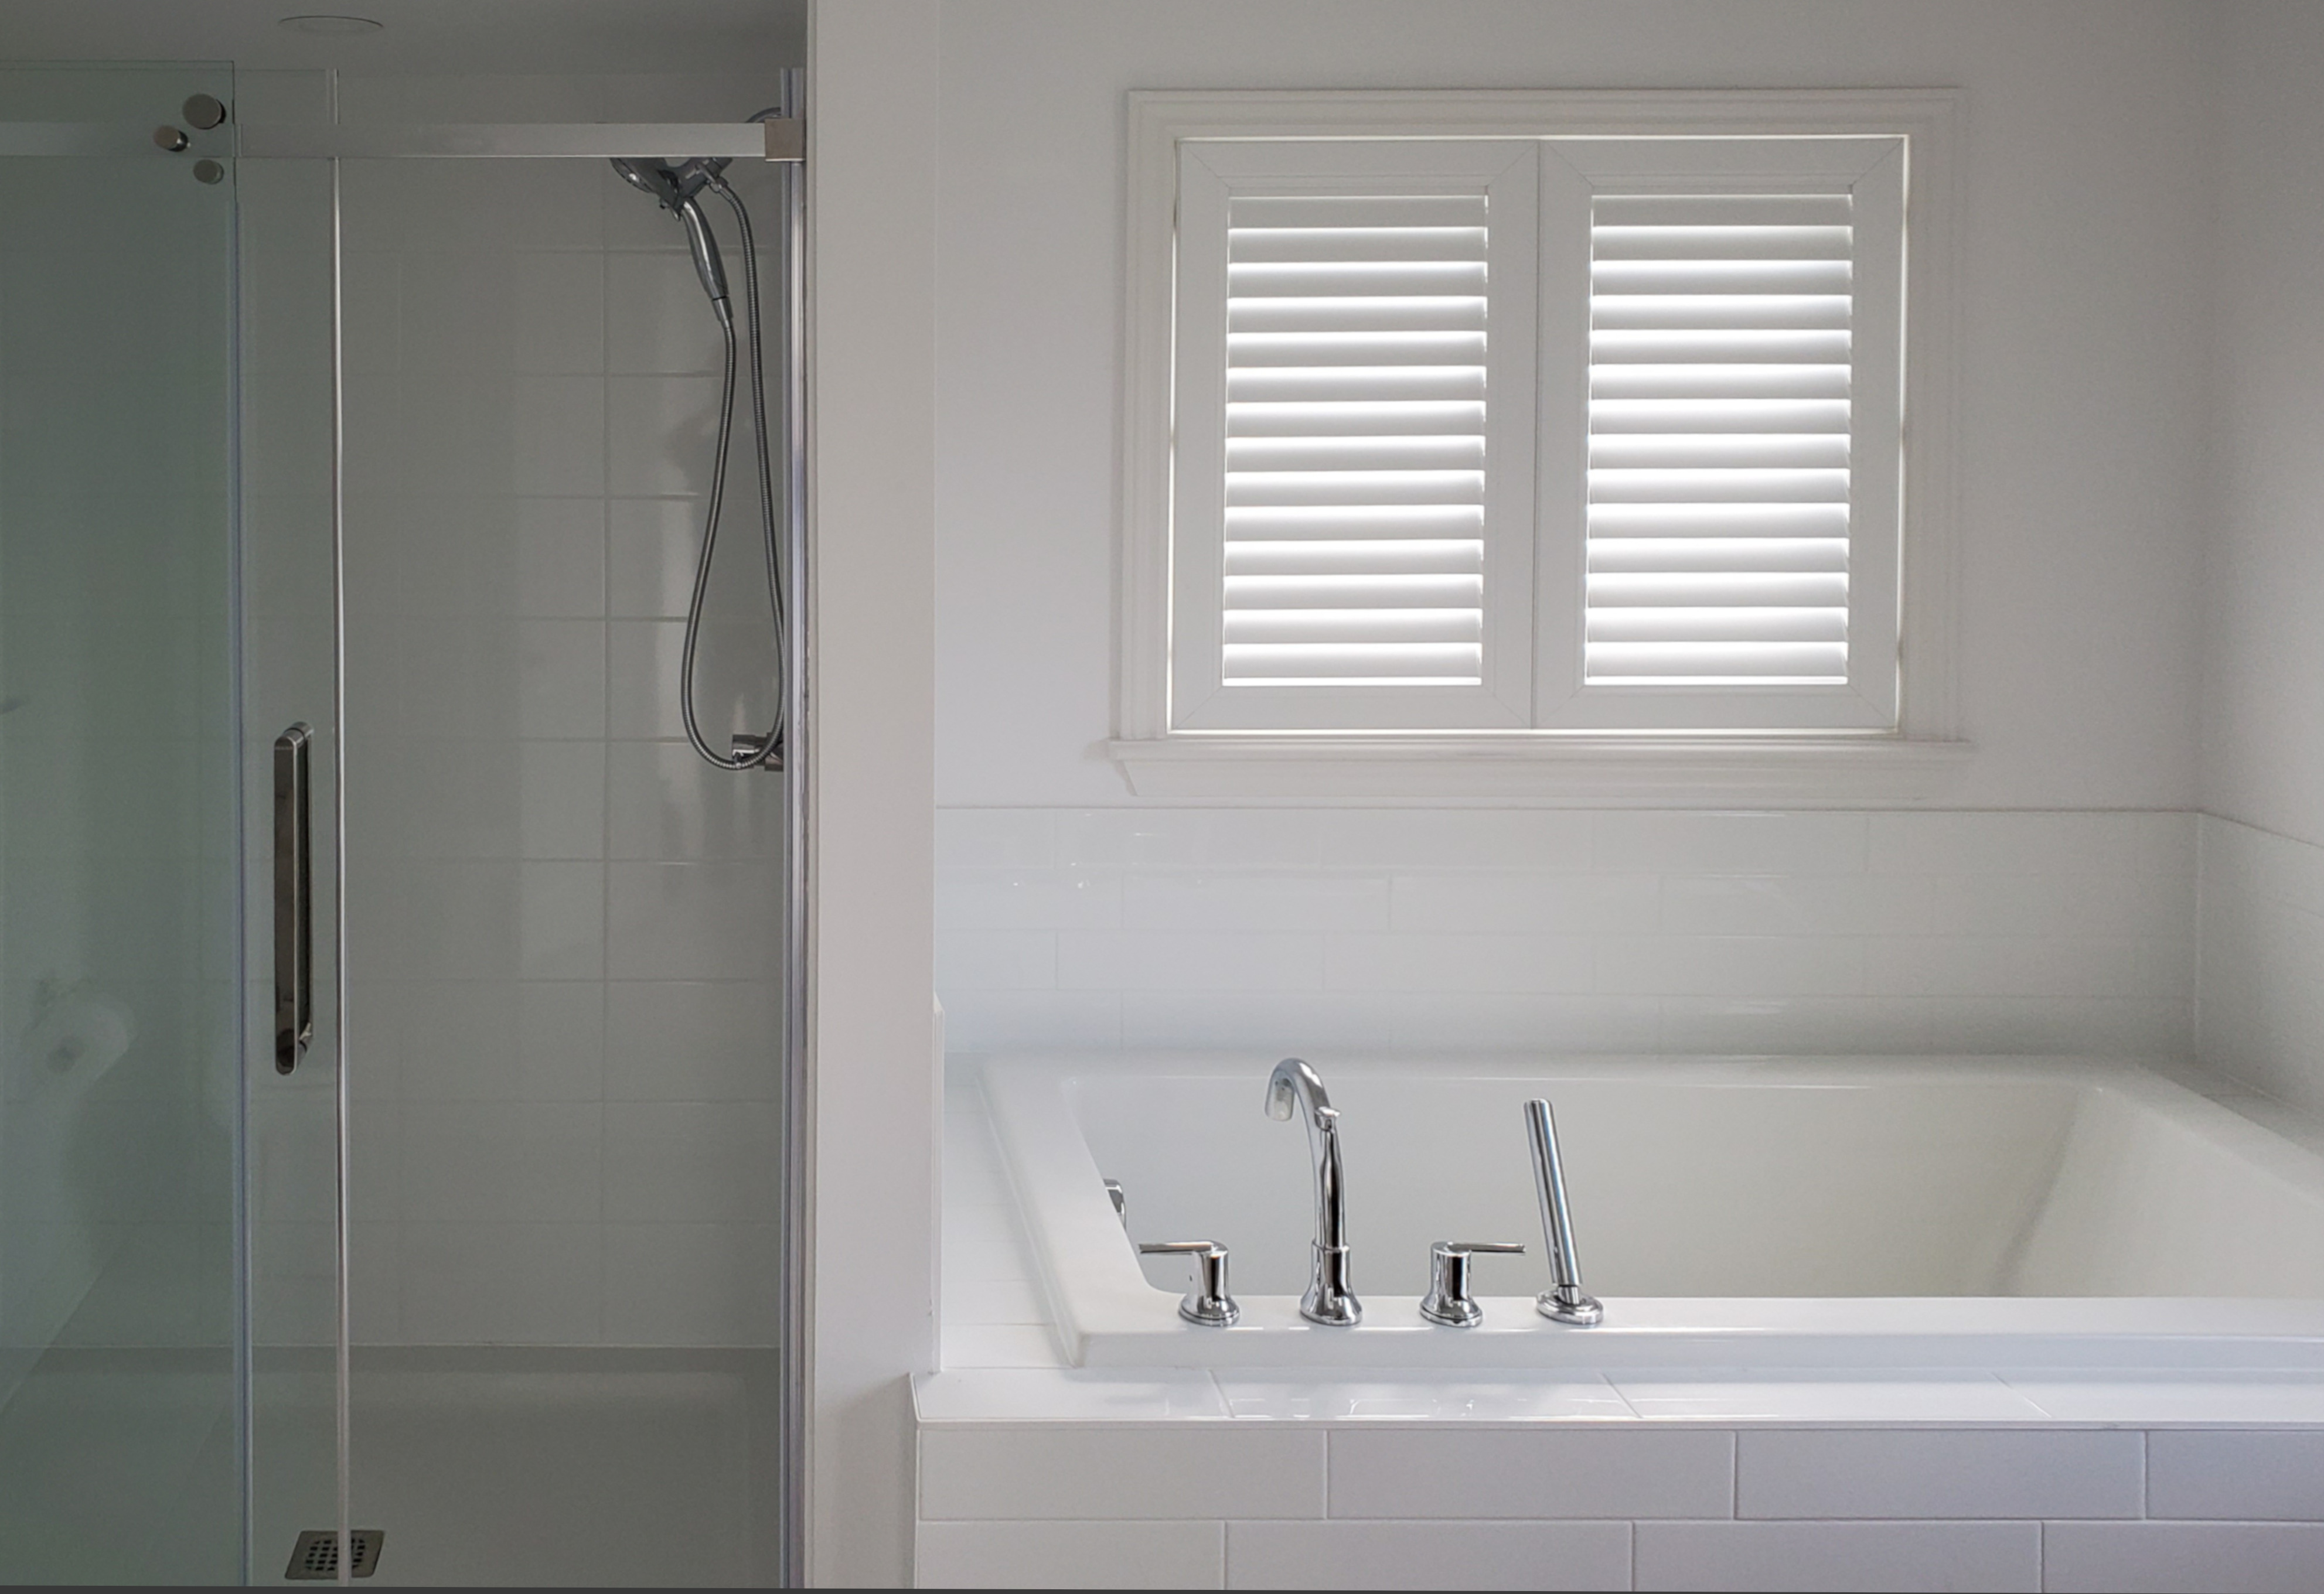 Des persiennes recouvrent une petite fenêtre située au-dessus d’une baignoire standard dans une salle de bain. 